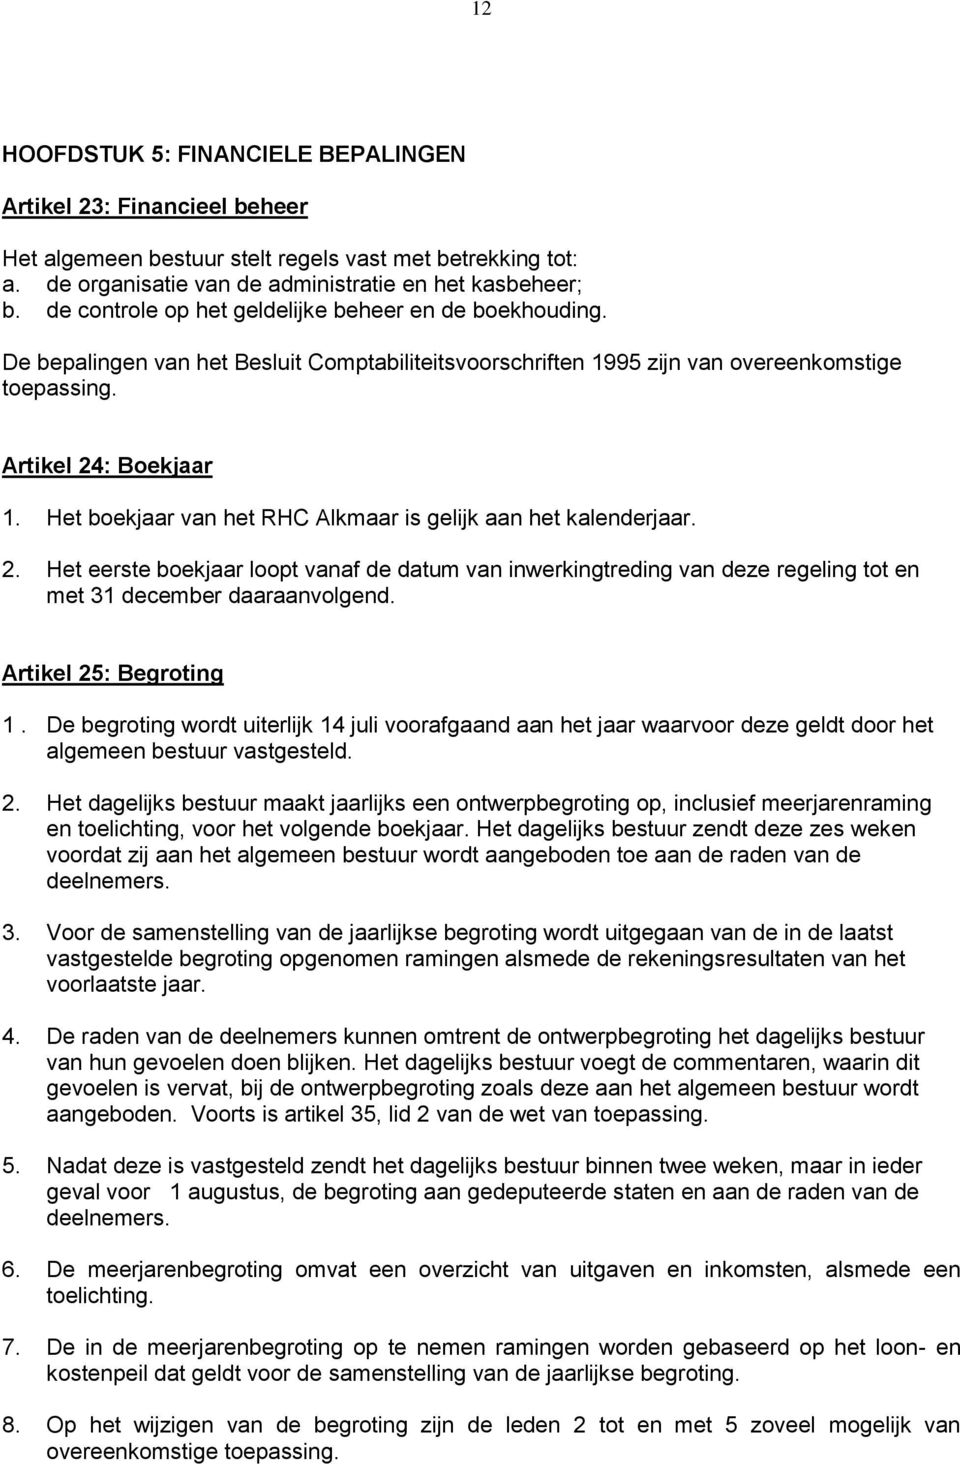 Het boekjaar van het RHC Alkmaar is gelijk aan het kalenderjaar. 2. Het eerste boekjaar loopt vanaf de datum van inwerkingtreding van deze regeling tot en met 31 december daaraanvolgend.